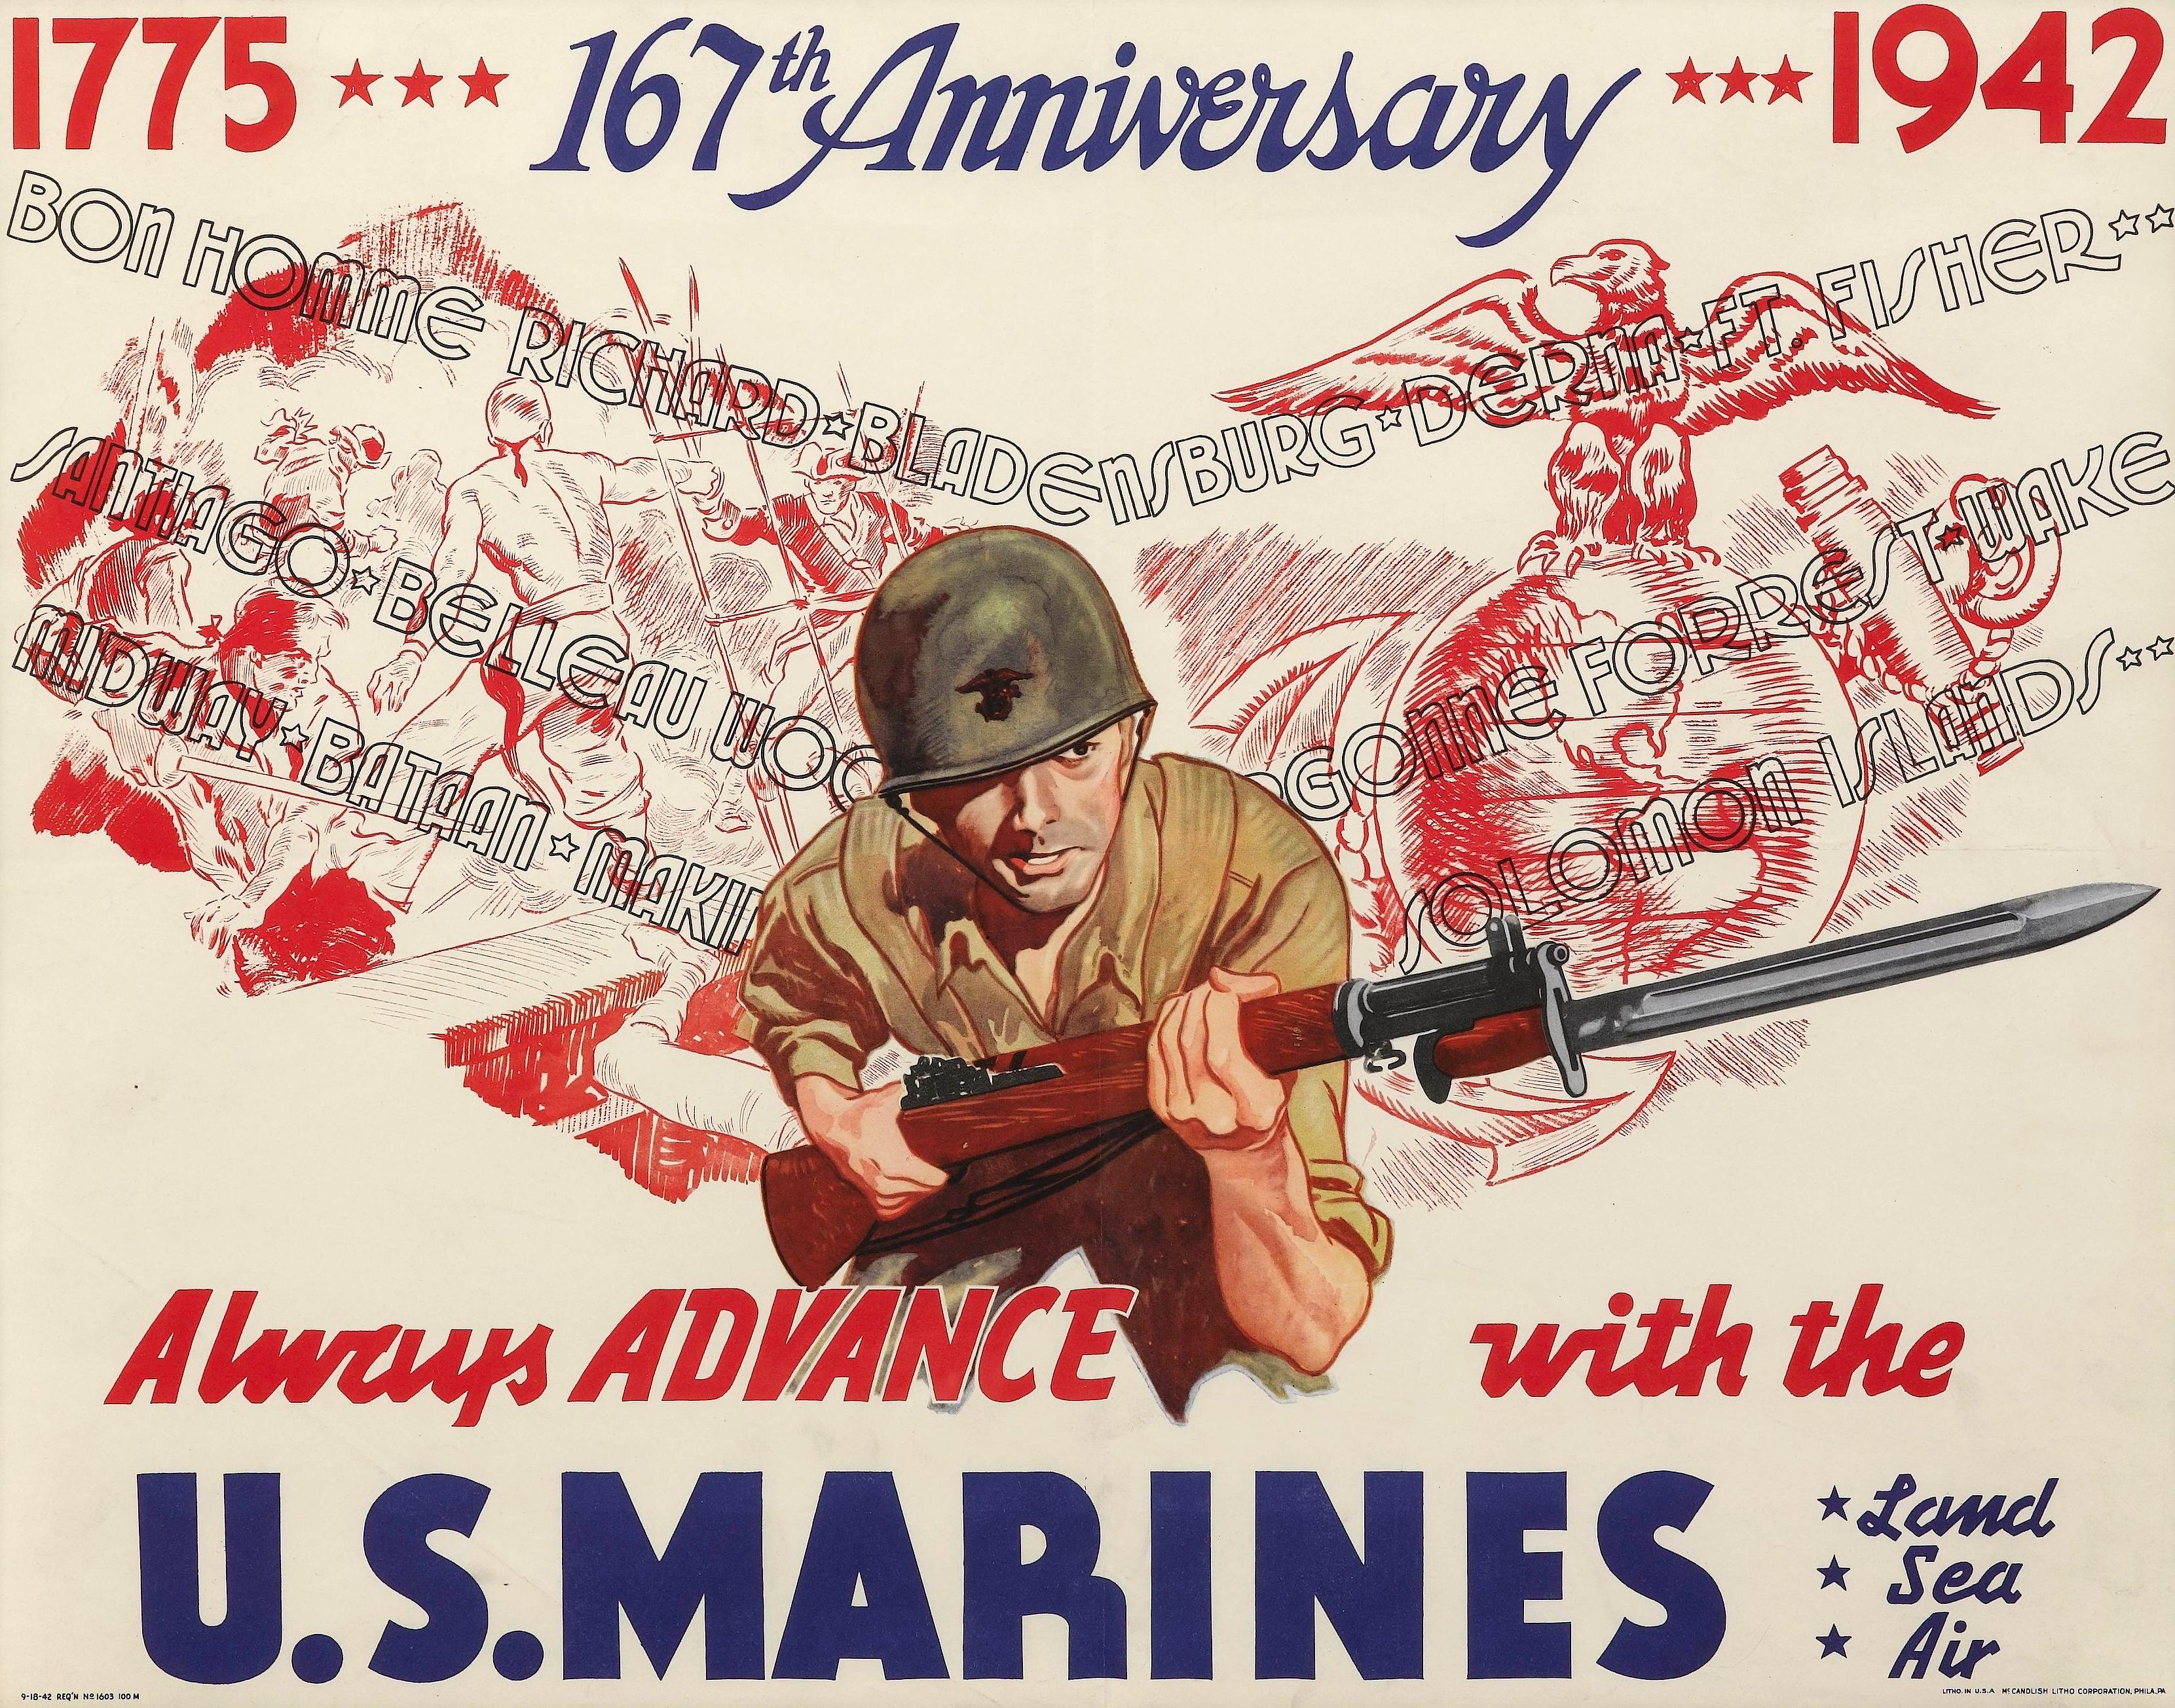 Präsentiert wird ein altes Poster des United States Marine Corps aus dem Jahr 1942, das das 167-jährige Bestehen der Organisation feiert. Das Poster zeigt eine dynamische Illustration eines amerikanischen Marinesoldaten, der einen grünen Helm trägt,